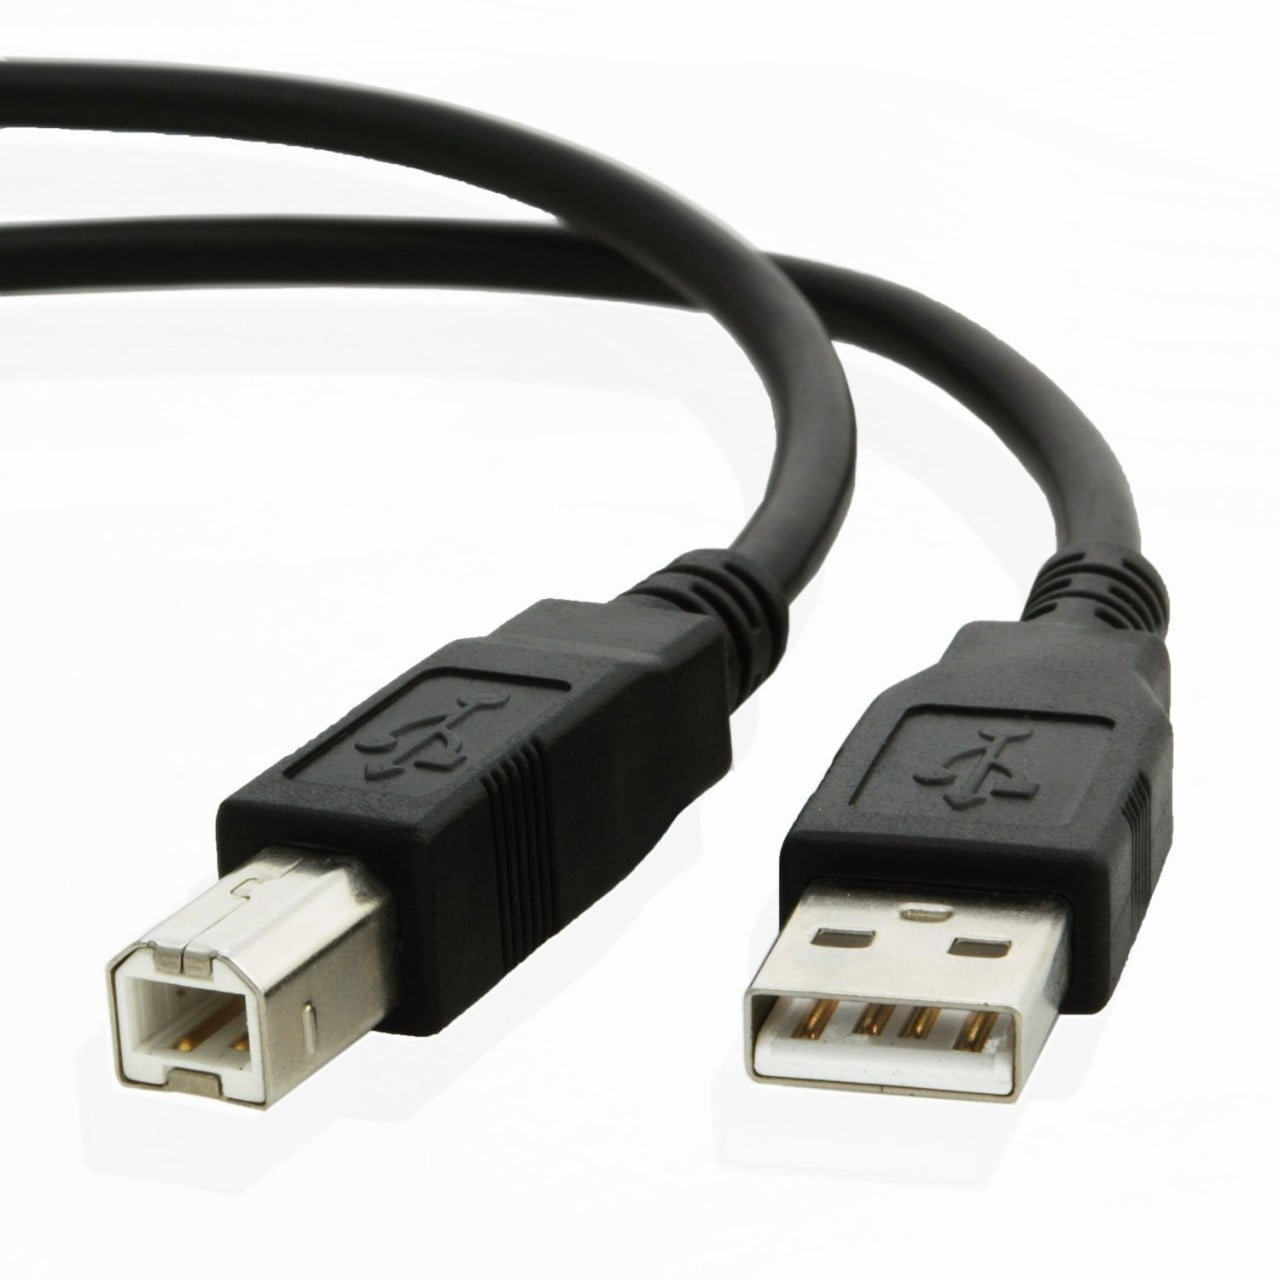 USB PC Cavo Dati per AKAI mpk25 mpk49 mpk61 mpk88 Professional MIDI Keyboard 